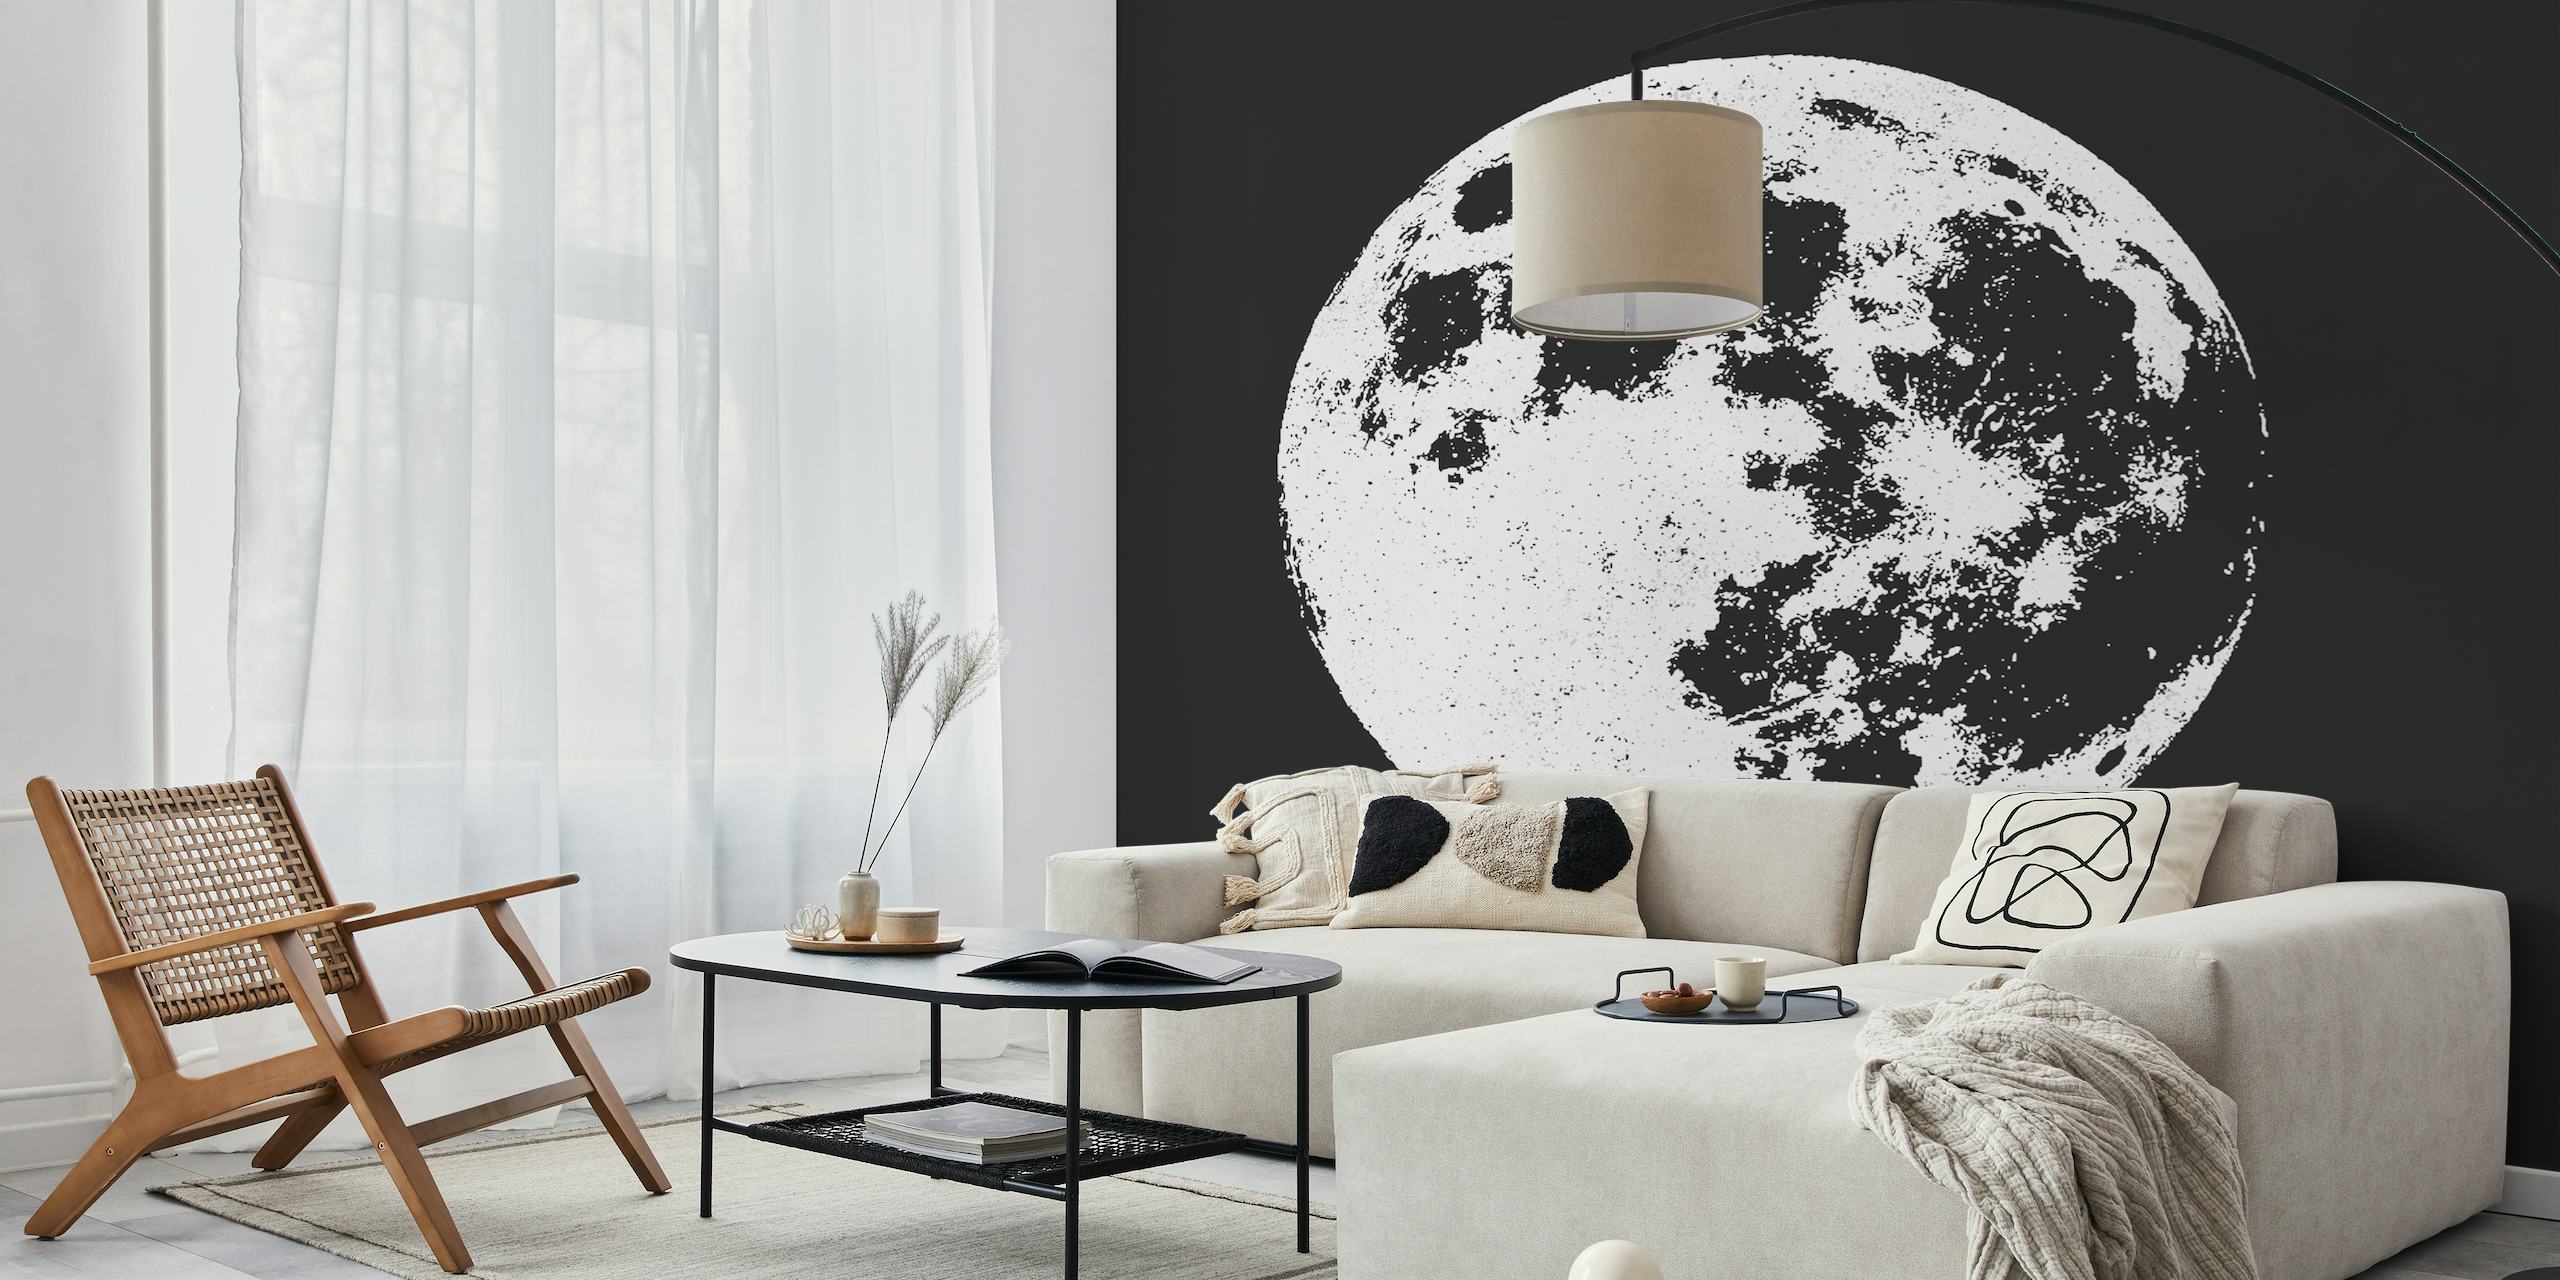 Full moon shining bright wallpaper